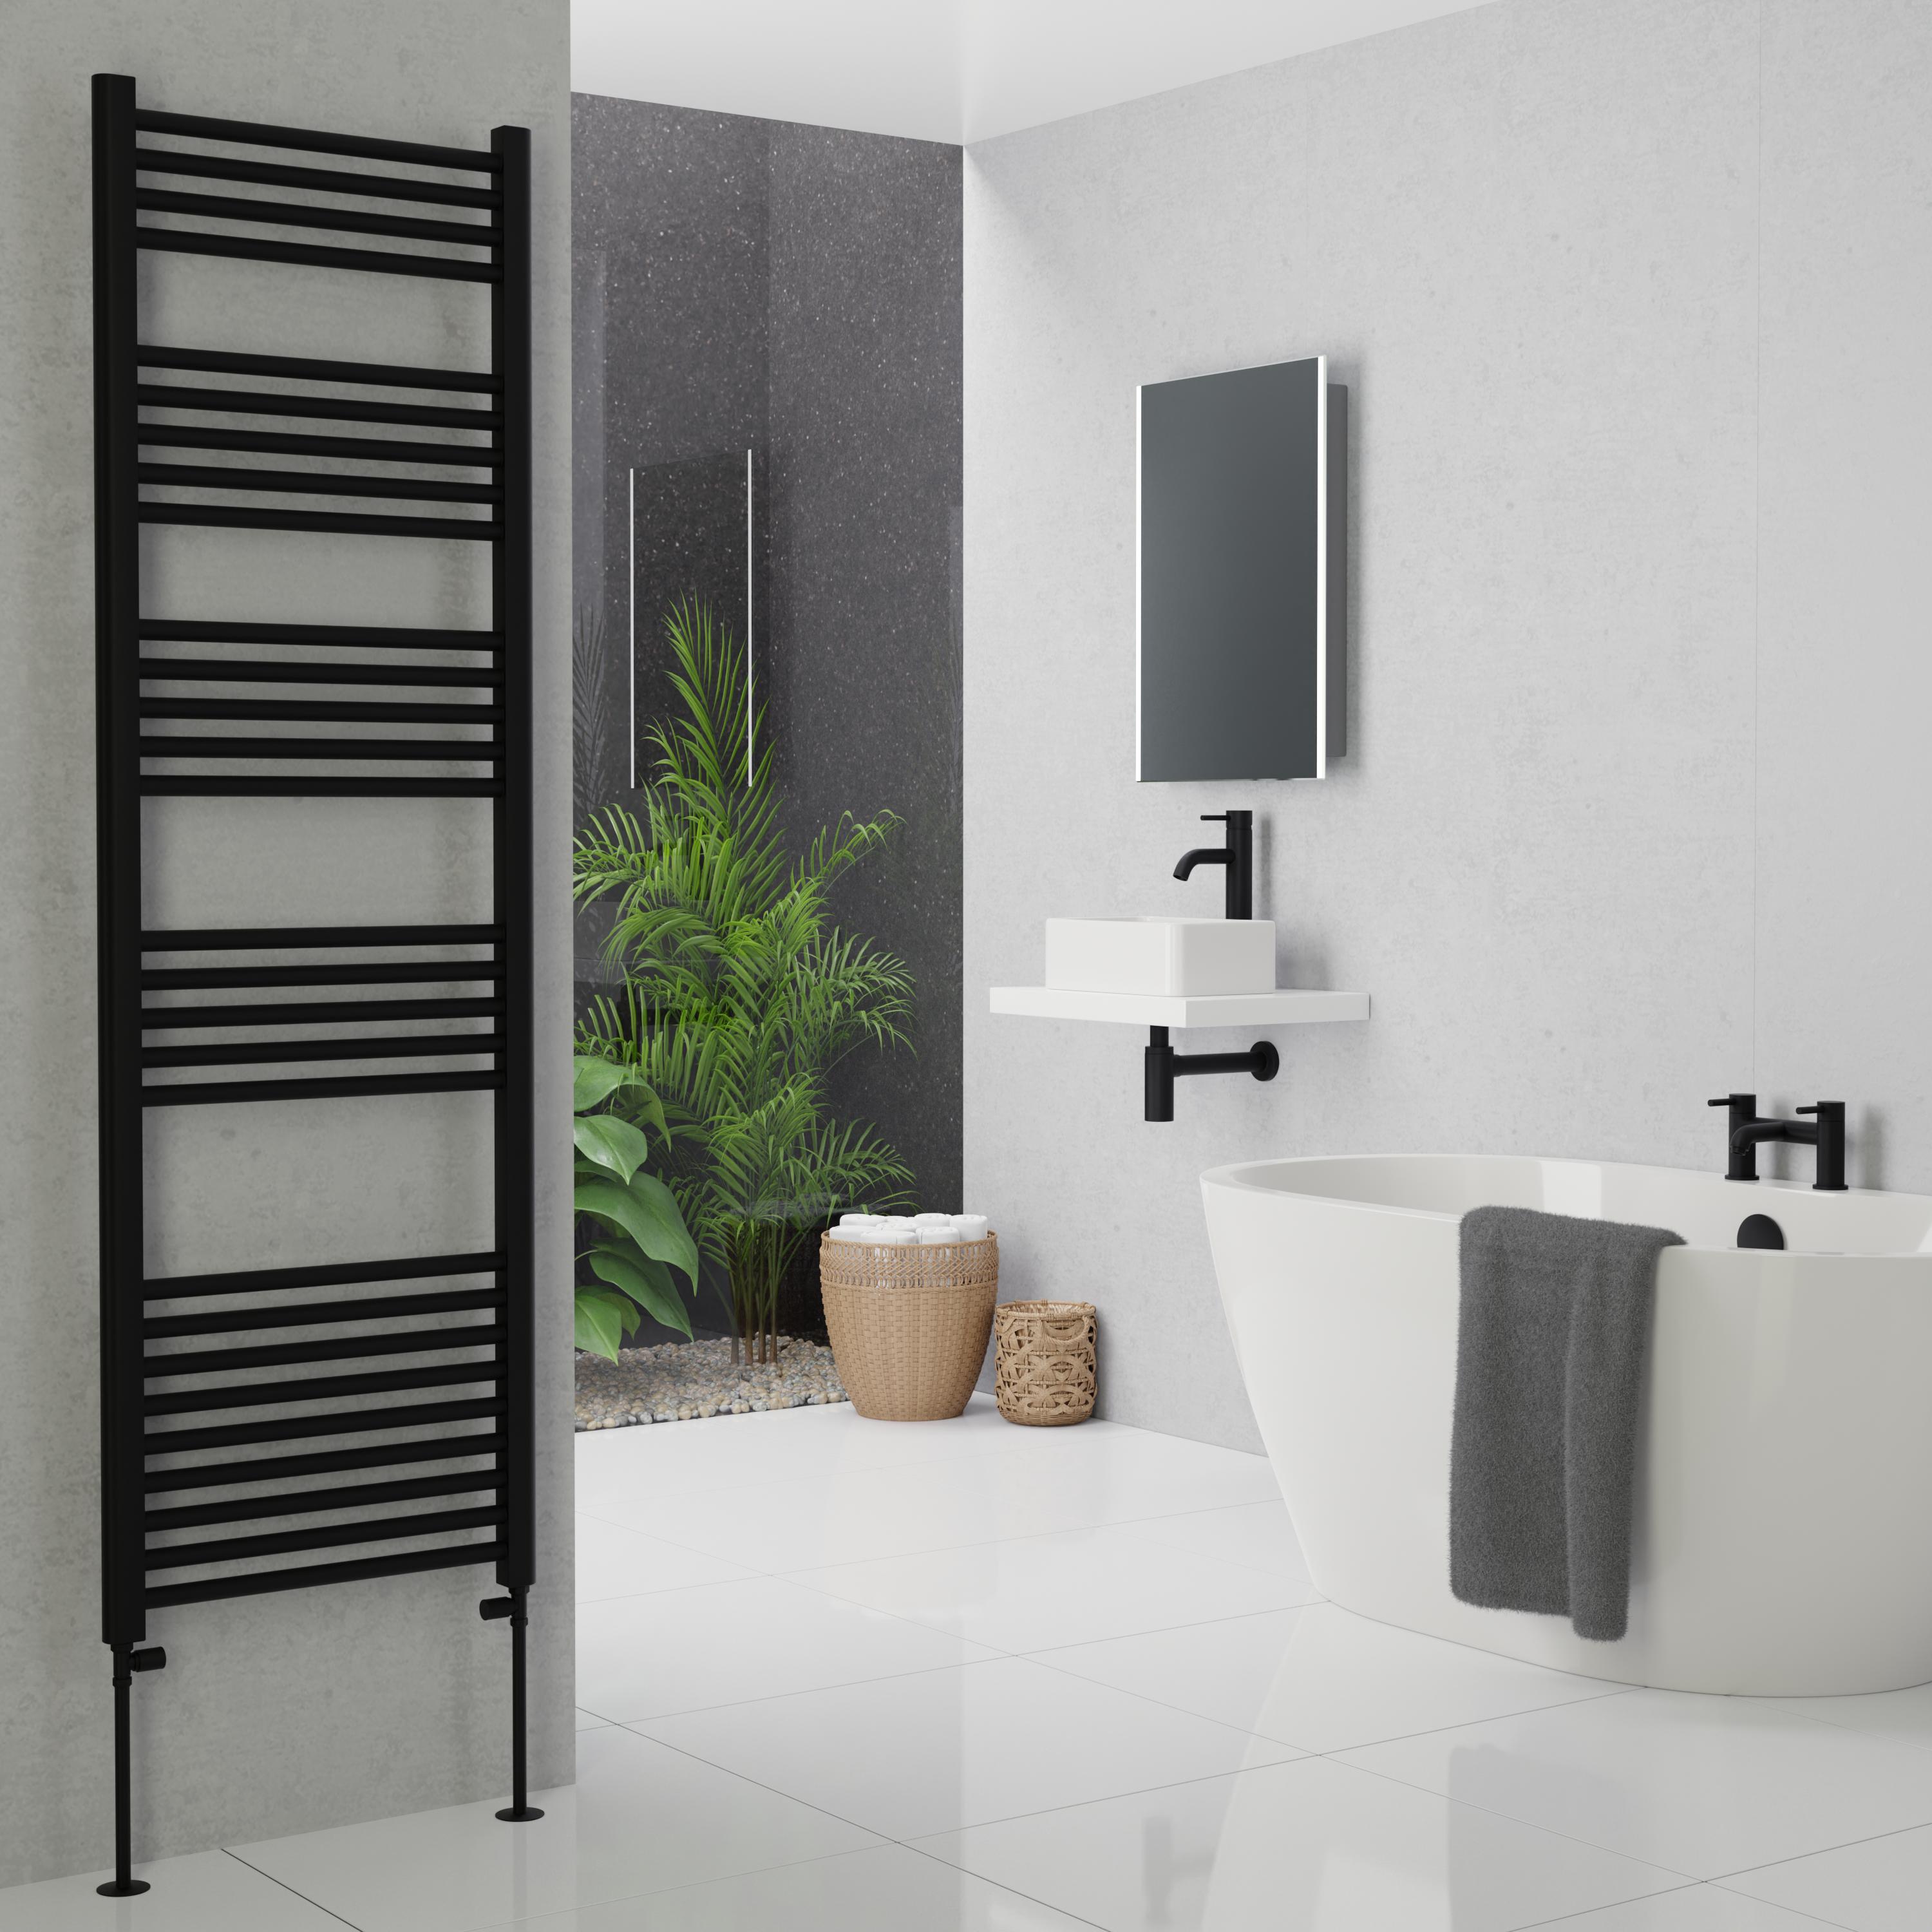 Large black heated towel rail on a bathroom wall